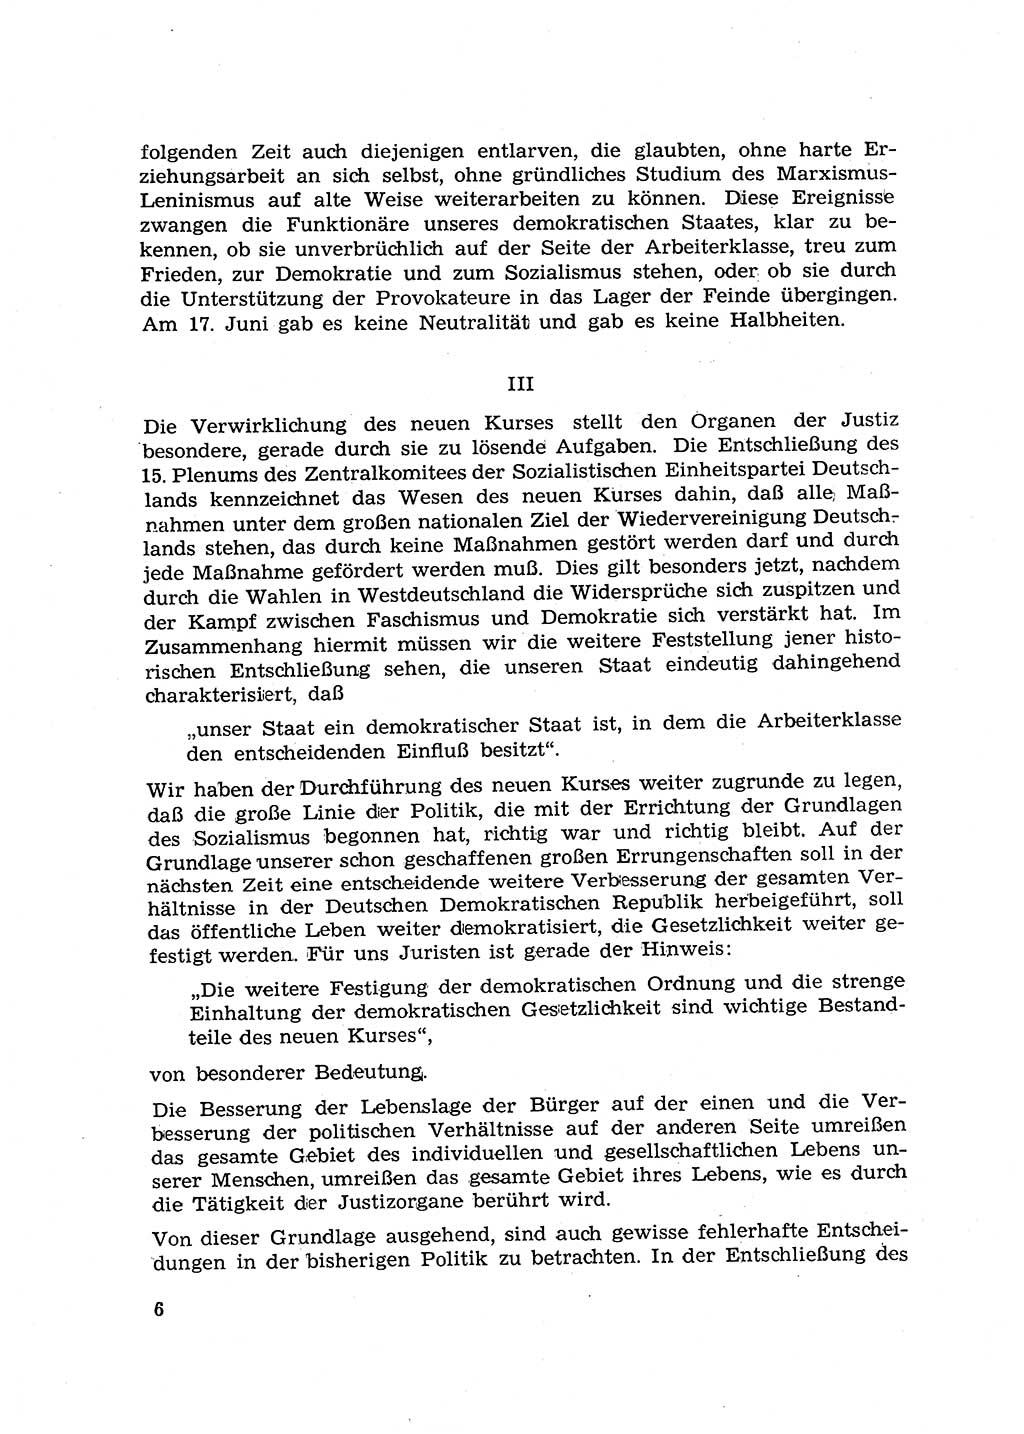 Hauptaufgaben der Justiz [Deutsche Demokratische Republik (DDR)] bei der Durchführung des neuen Kurses 1953, Seite 6 (Hpt.-Aufg. J. DDR 1953, S. 6)